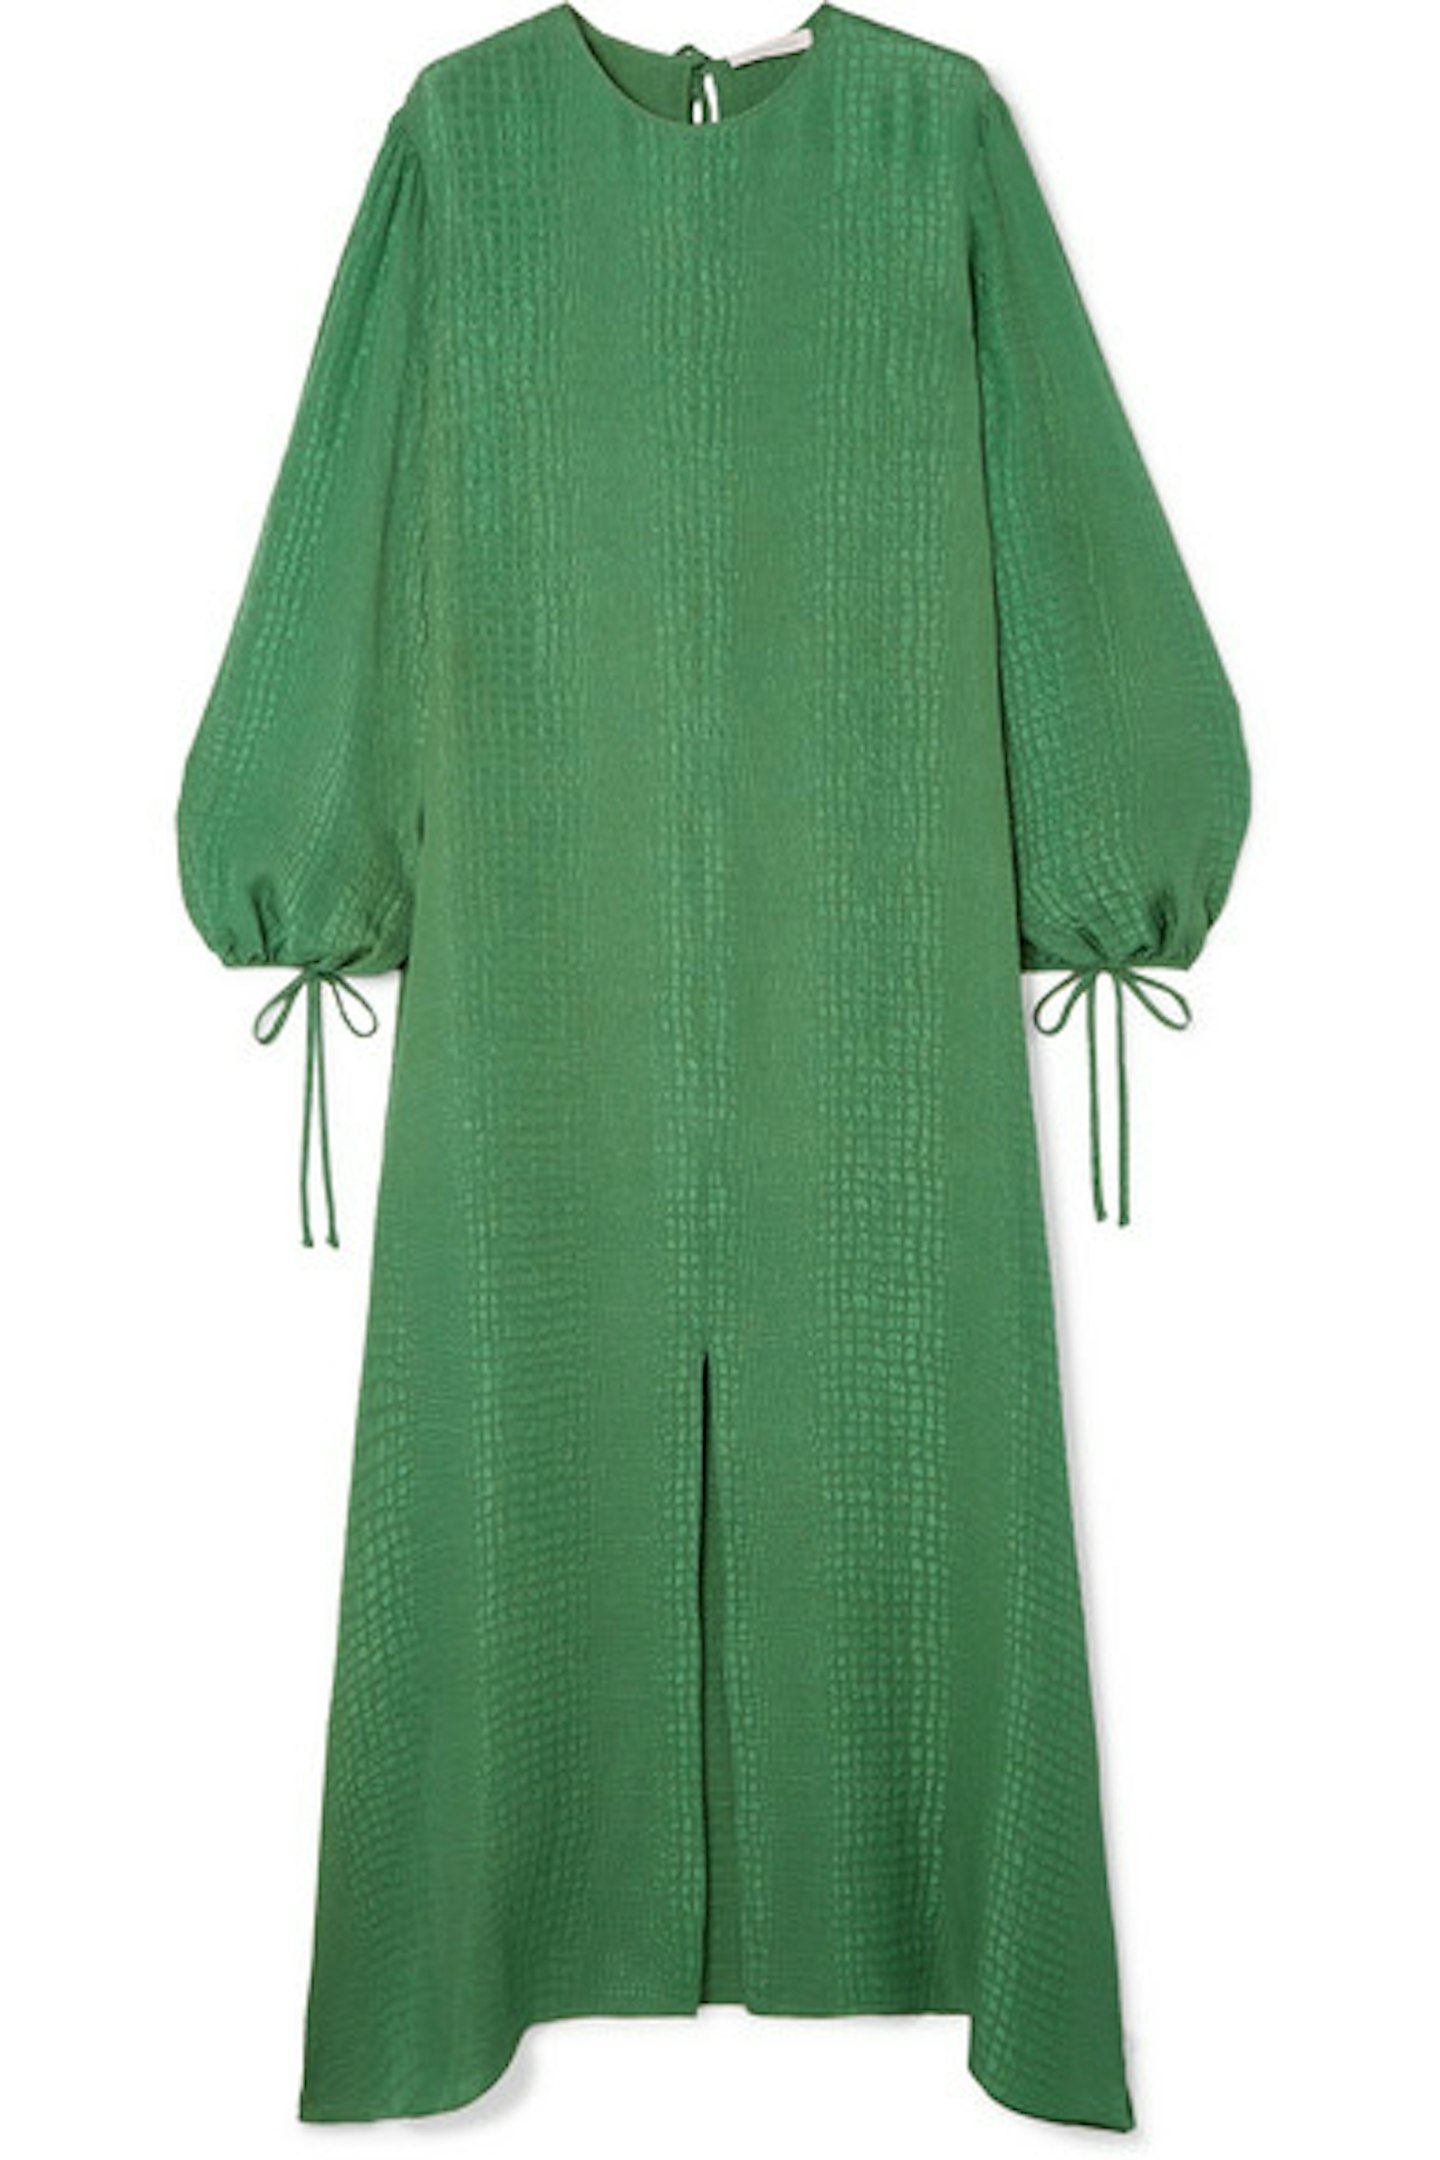 green dress net a porter